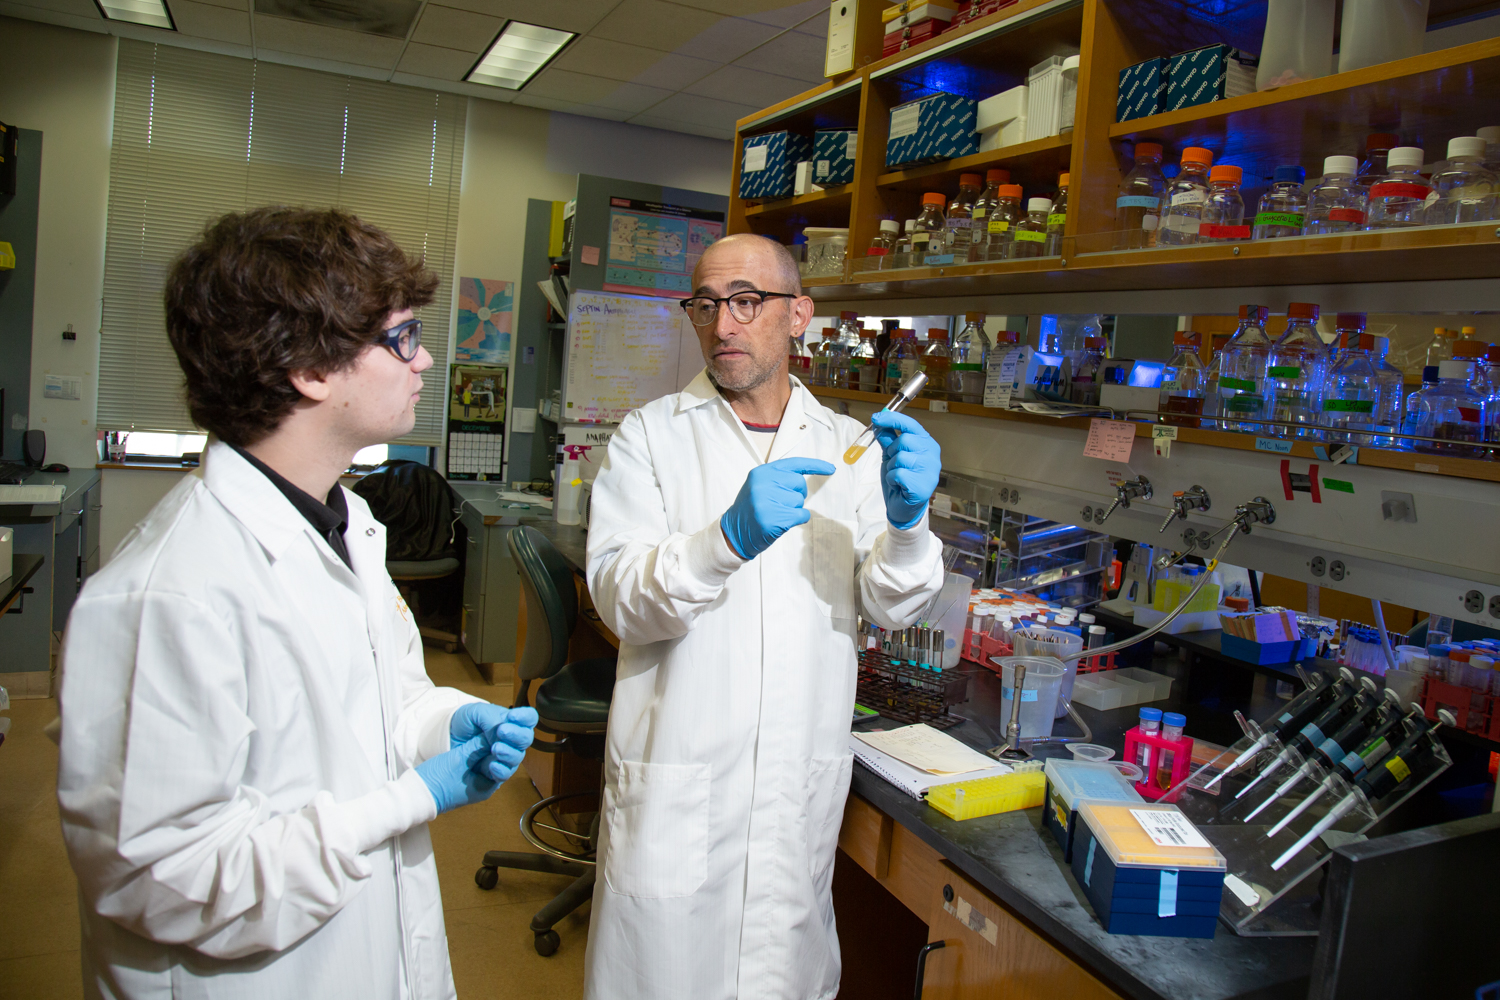 Mackenzie Noon and Professor Ken Kaplan discuss in the lab